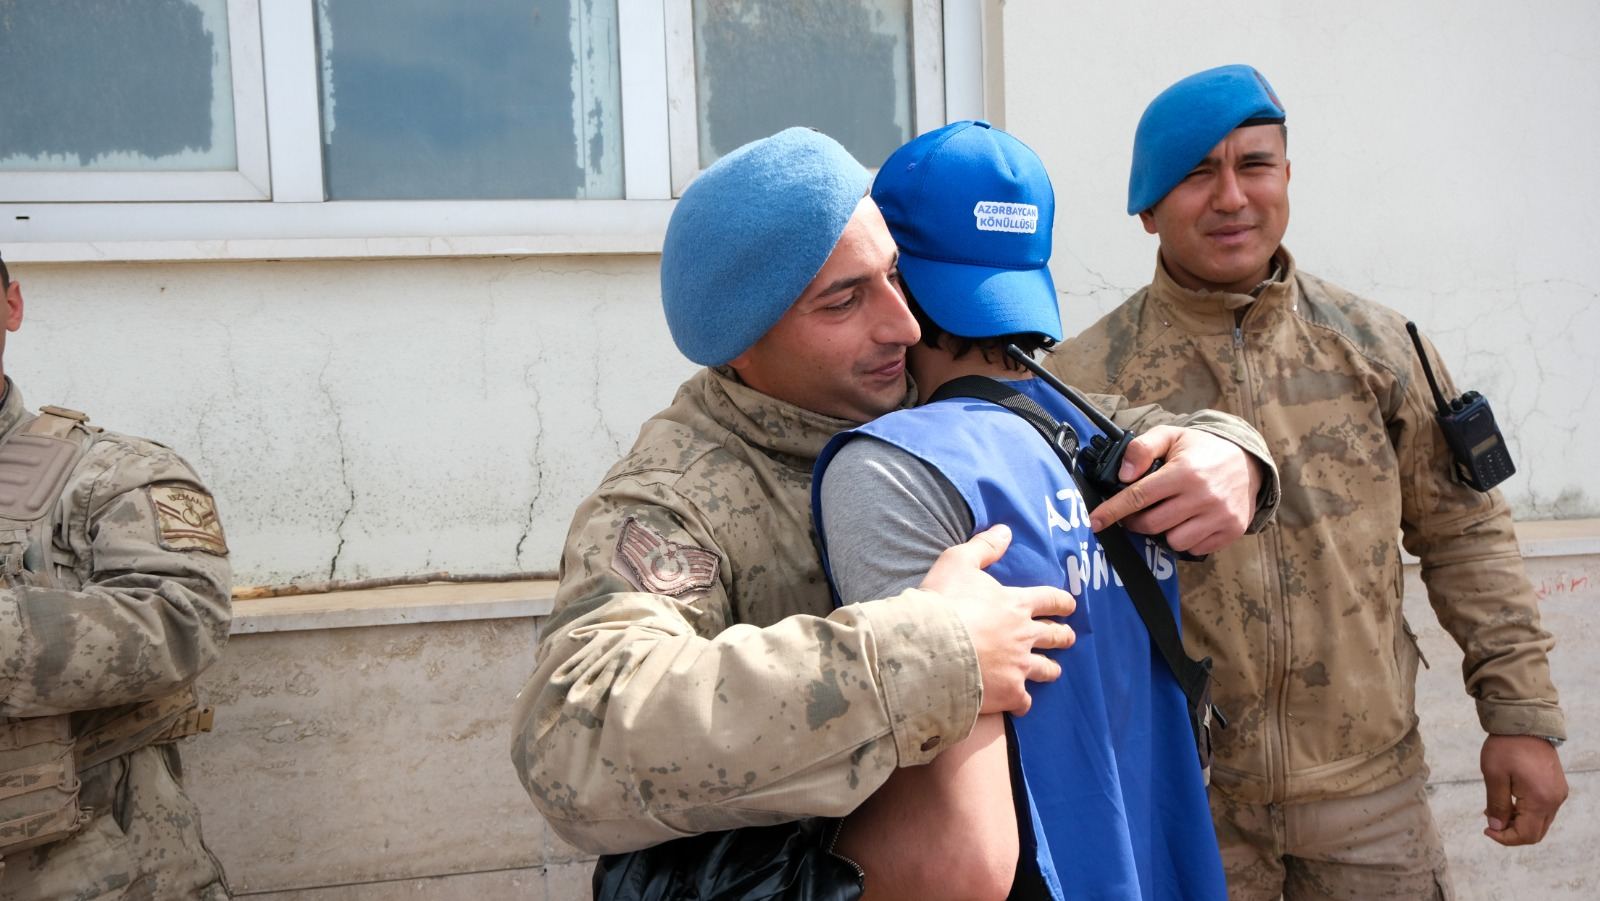 Azerbaijani volunteers returning from quake-hit Türkiye (PHOTO)